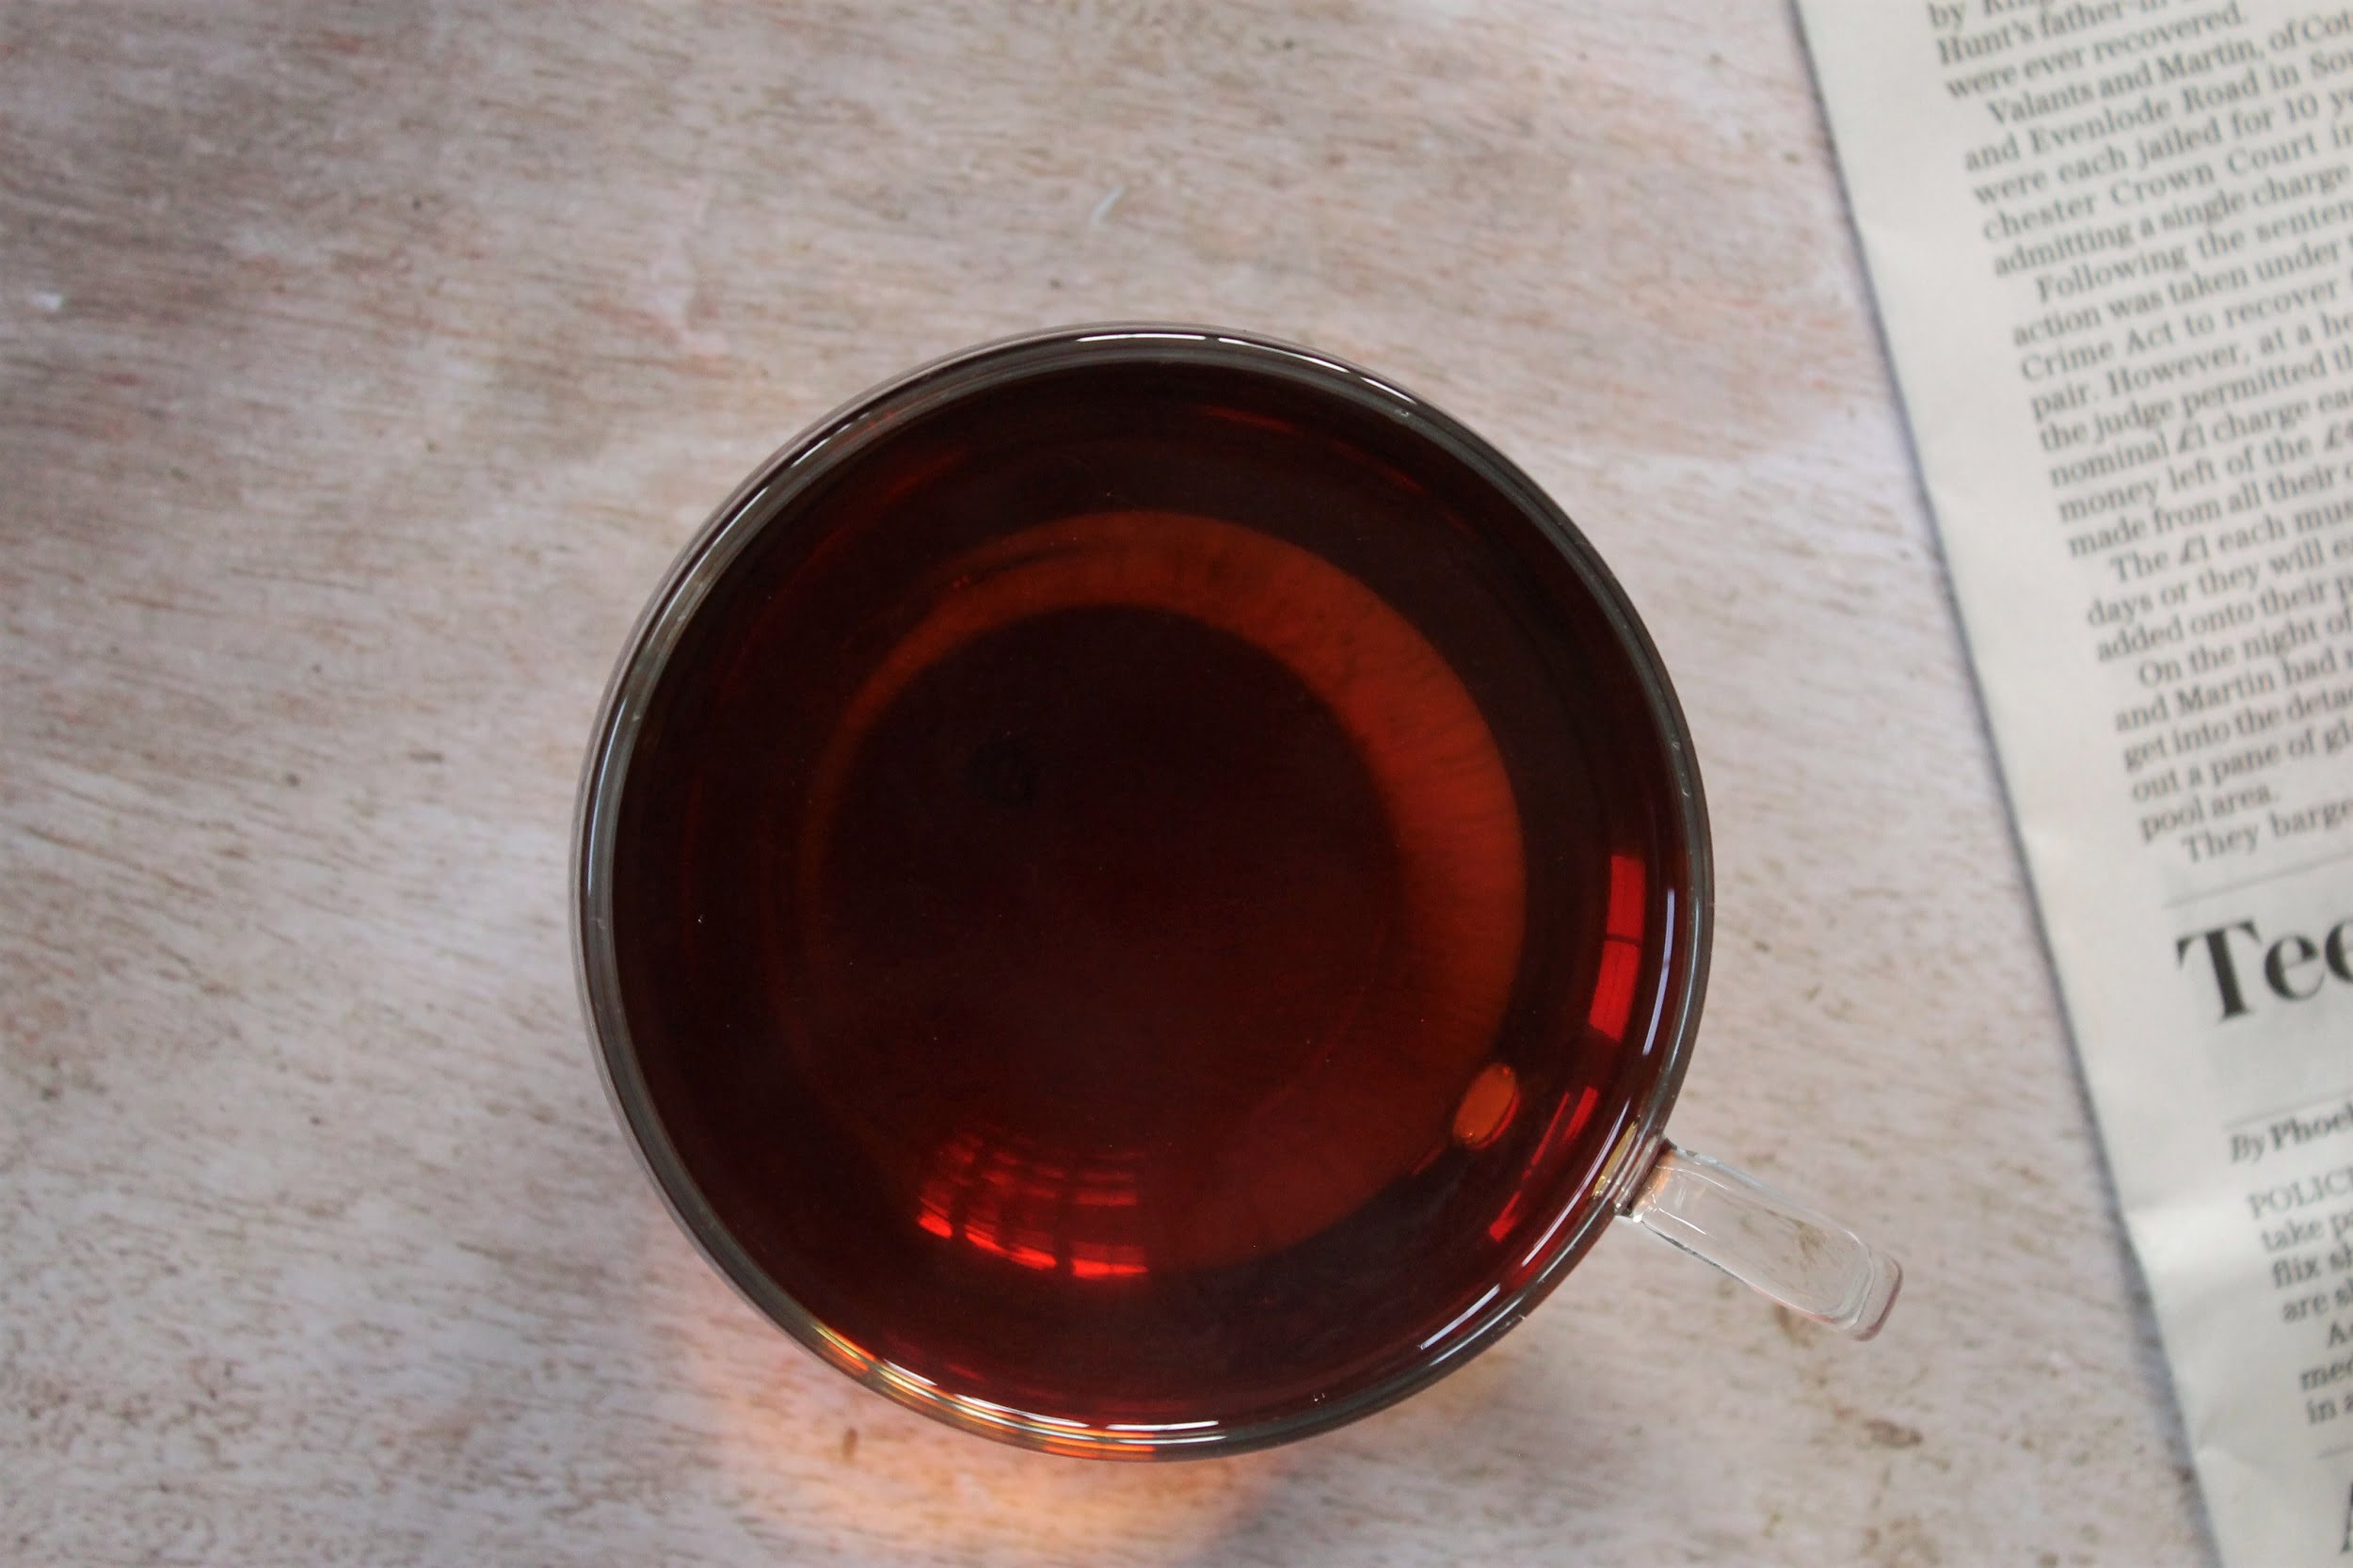 t2 breakfast tea in glass teacup